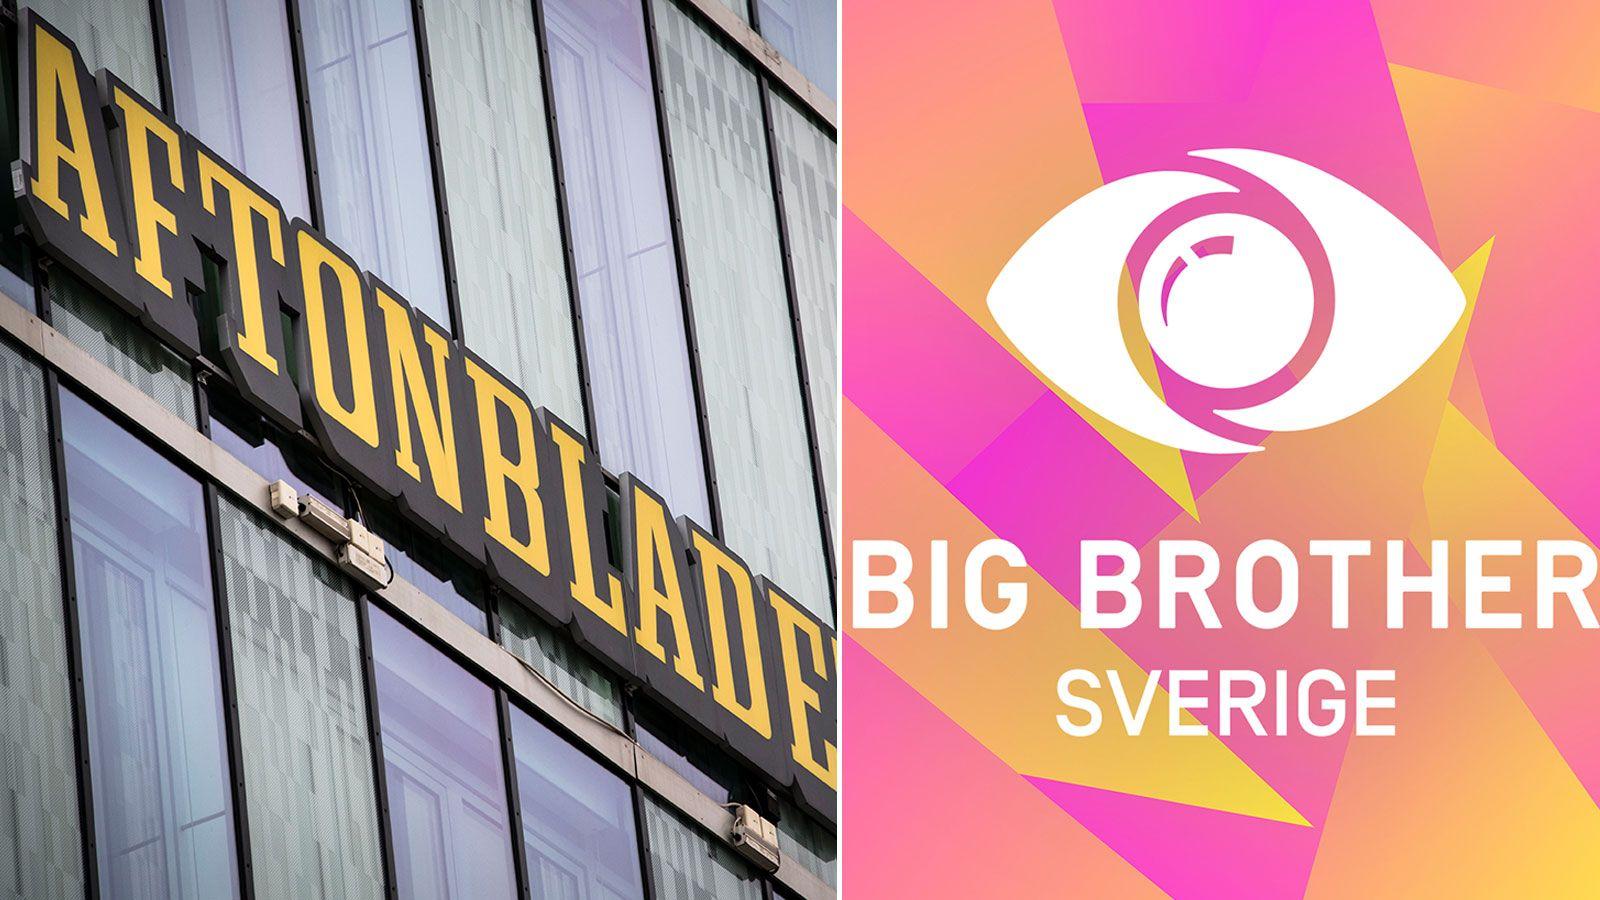 I samband med premiären lanserar Aftonbladet i samarbete med TV4 ”Big brother inifrån”.